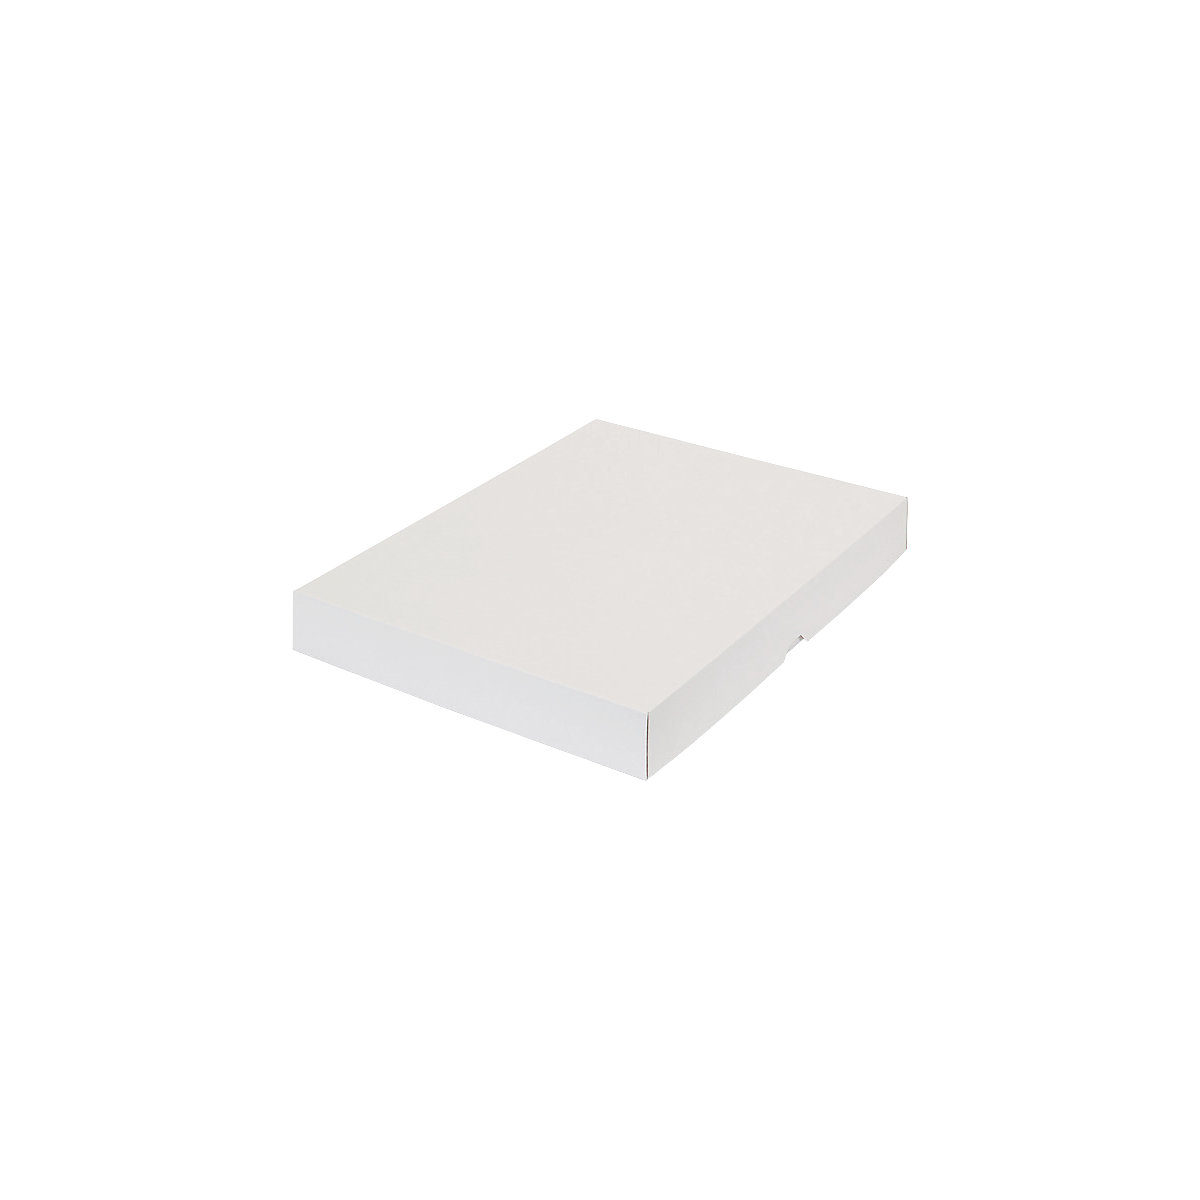 Stülpdeckelkarton, zweiteilig, Innenmaße 435 x 315 x 50 mm, A3, weiß, ab 50 Stk-35